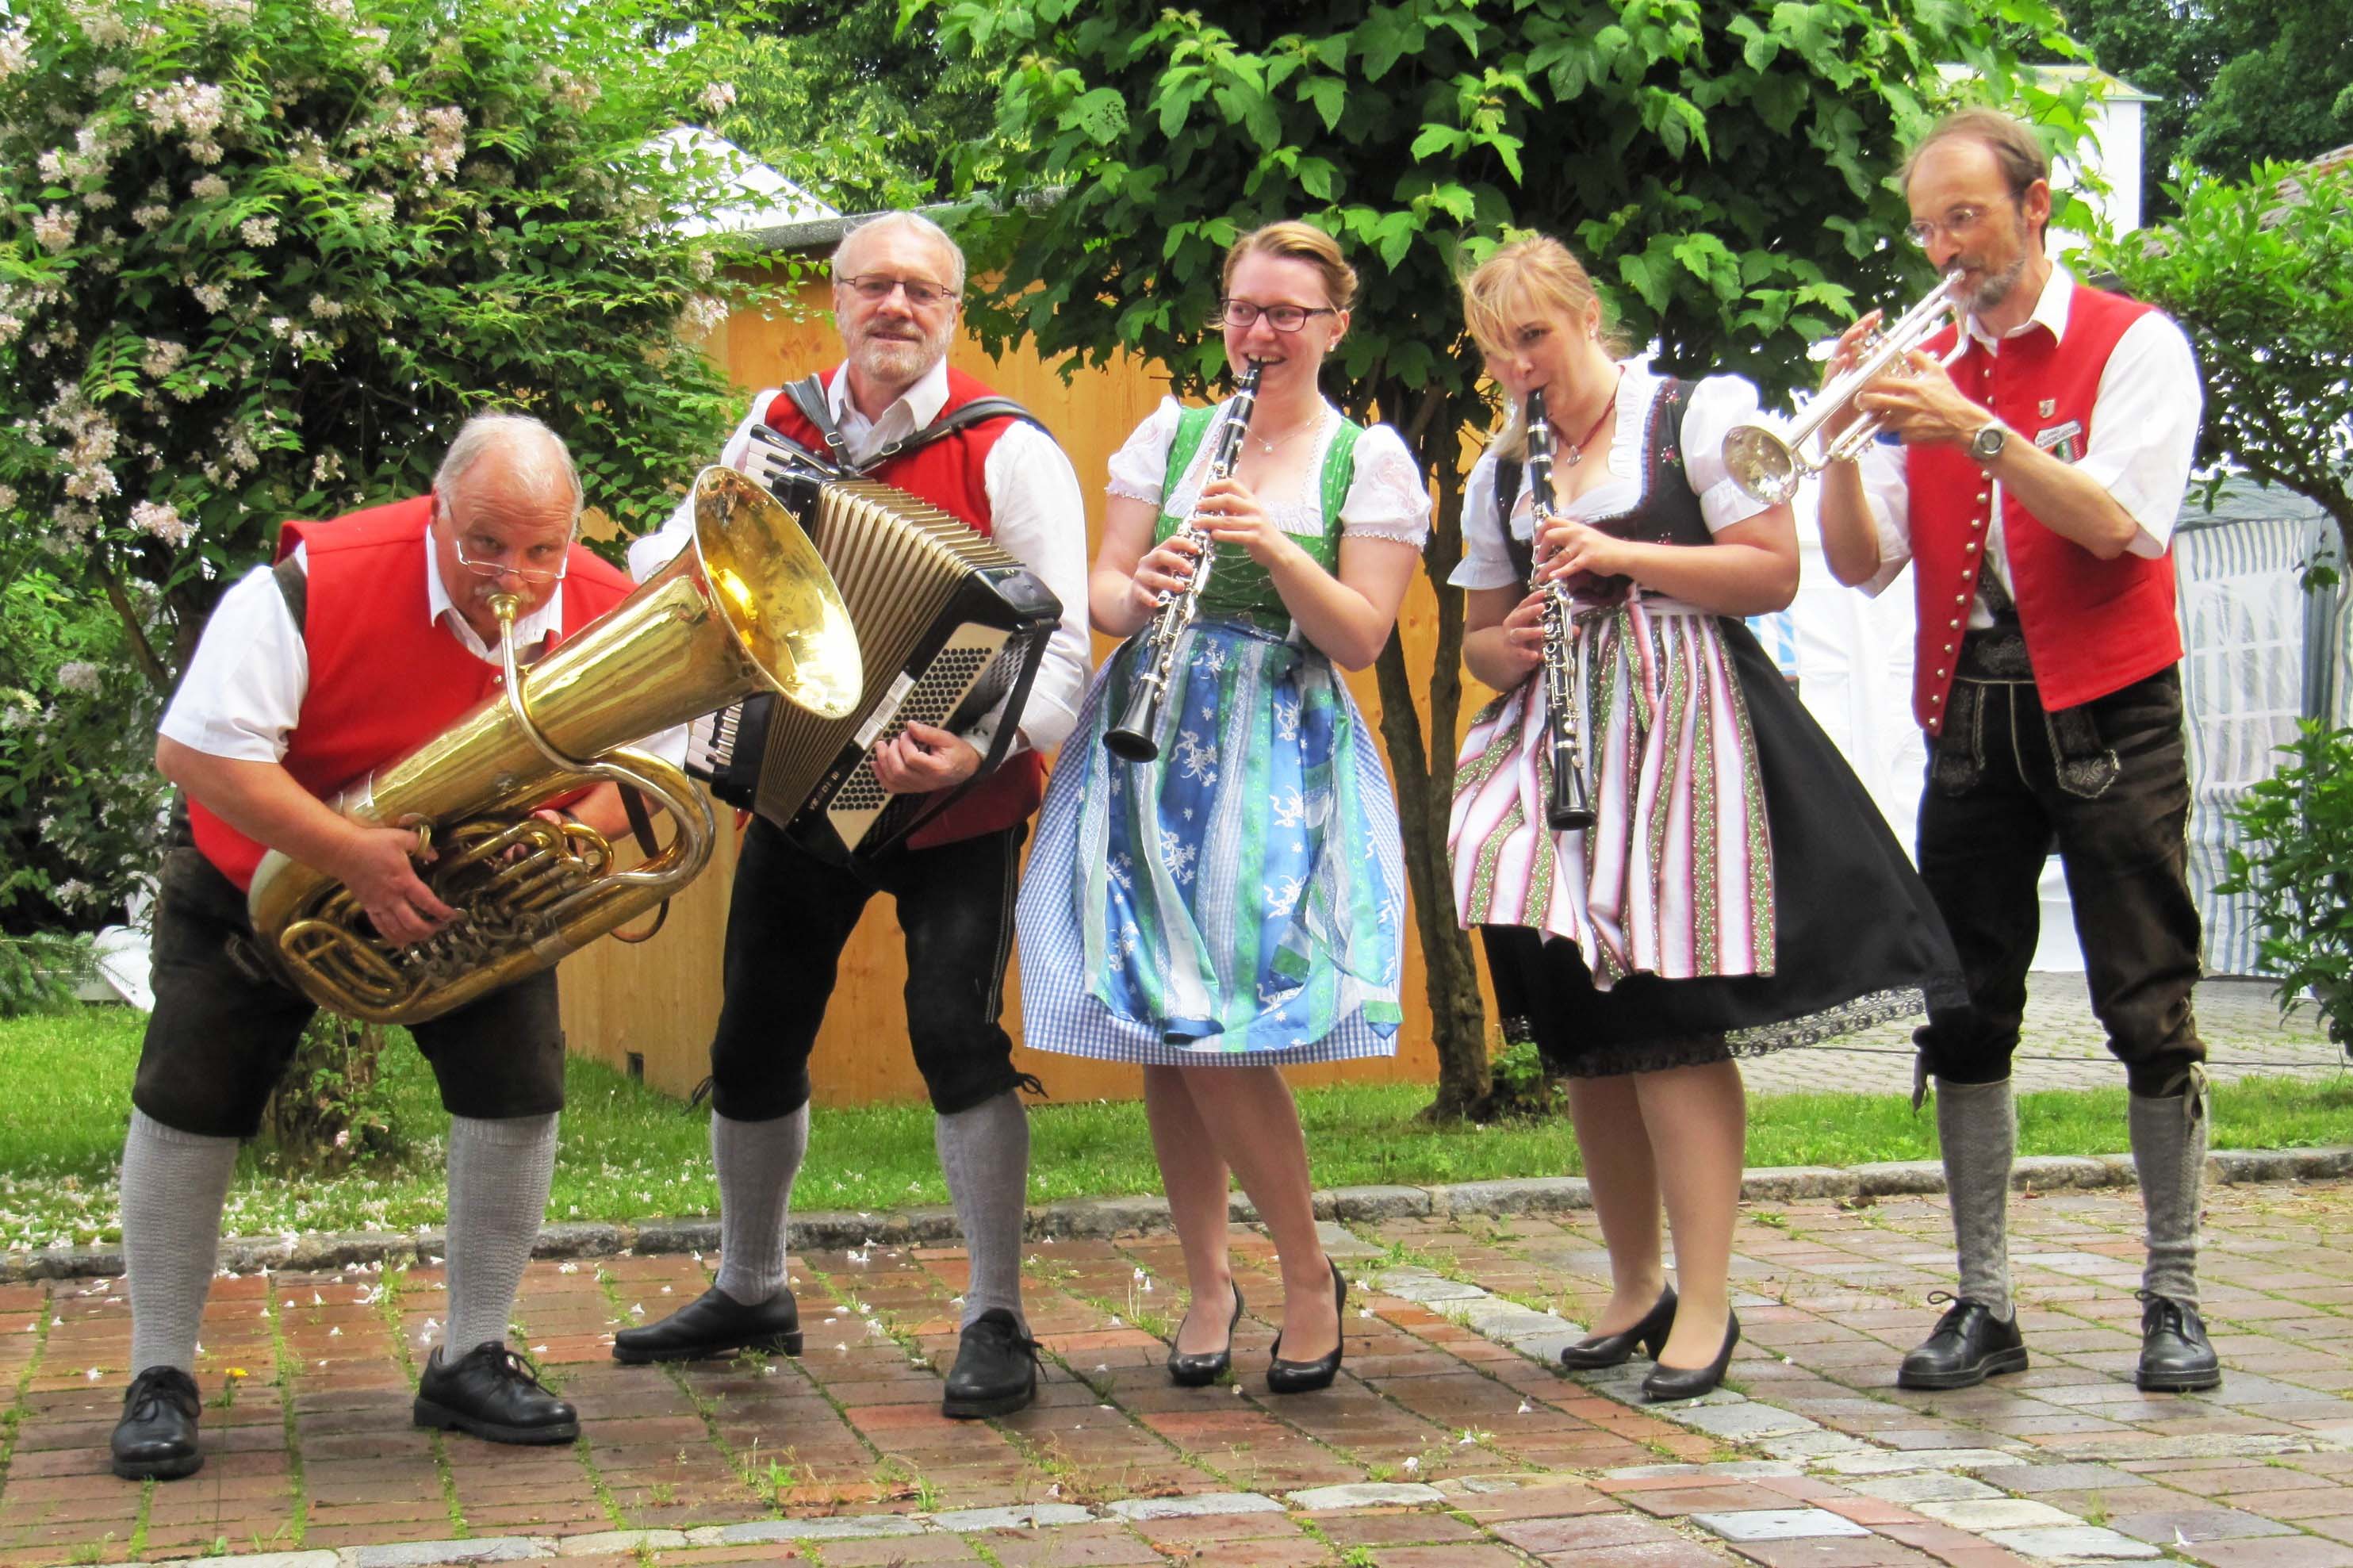 An ein Jubiläum erinnert musikalisch die Gögginger Tanzlmusik: Vor 150 Jahren wurde der Augsburger Kapellmeister Wendelin Massanari geboren, der das Blasmusikwesen in der Region sehr geprägt hat.